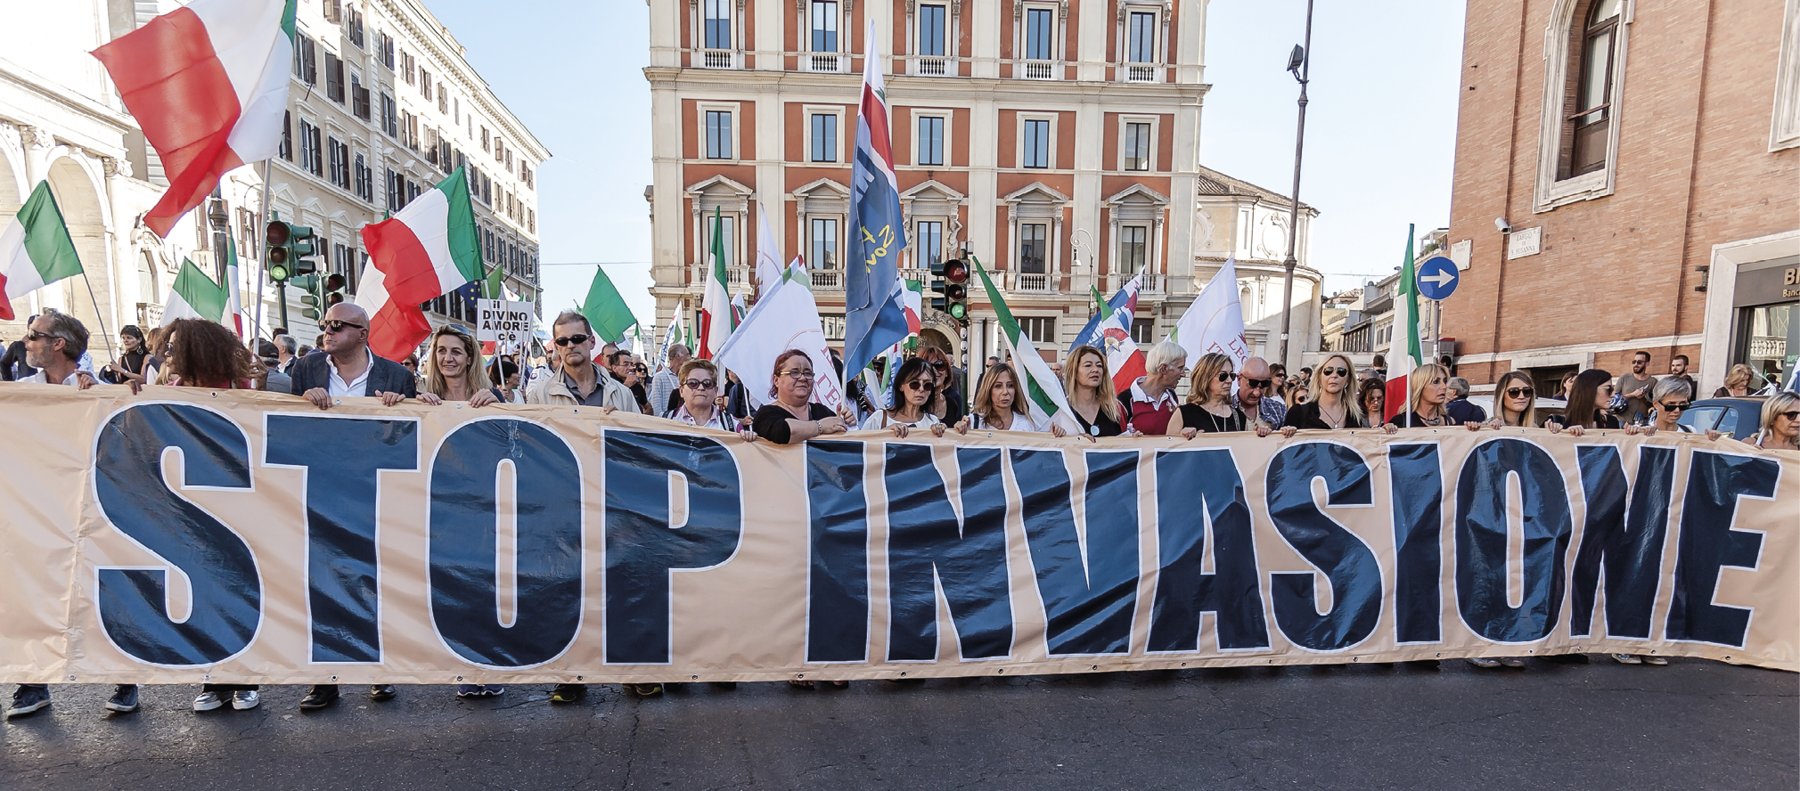 Fotografia. Diversas pessoas em pé segurando uma faixa com uma frase no idioma italiano. Ao fundo, há diversas bandeiras da Itália. Ao redor, prédios.